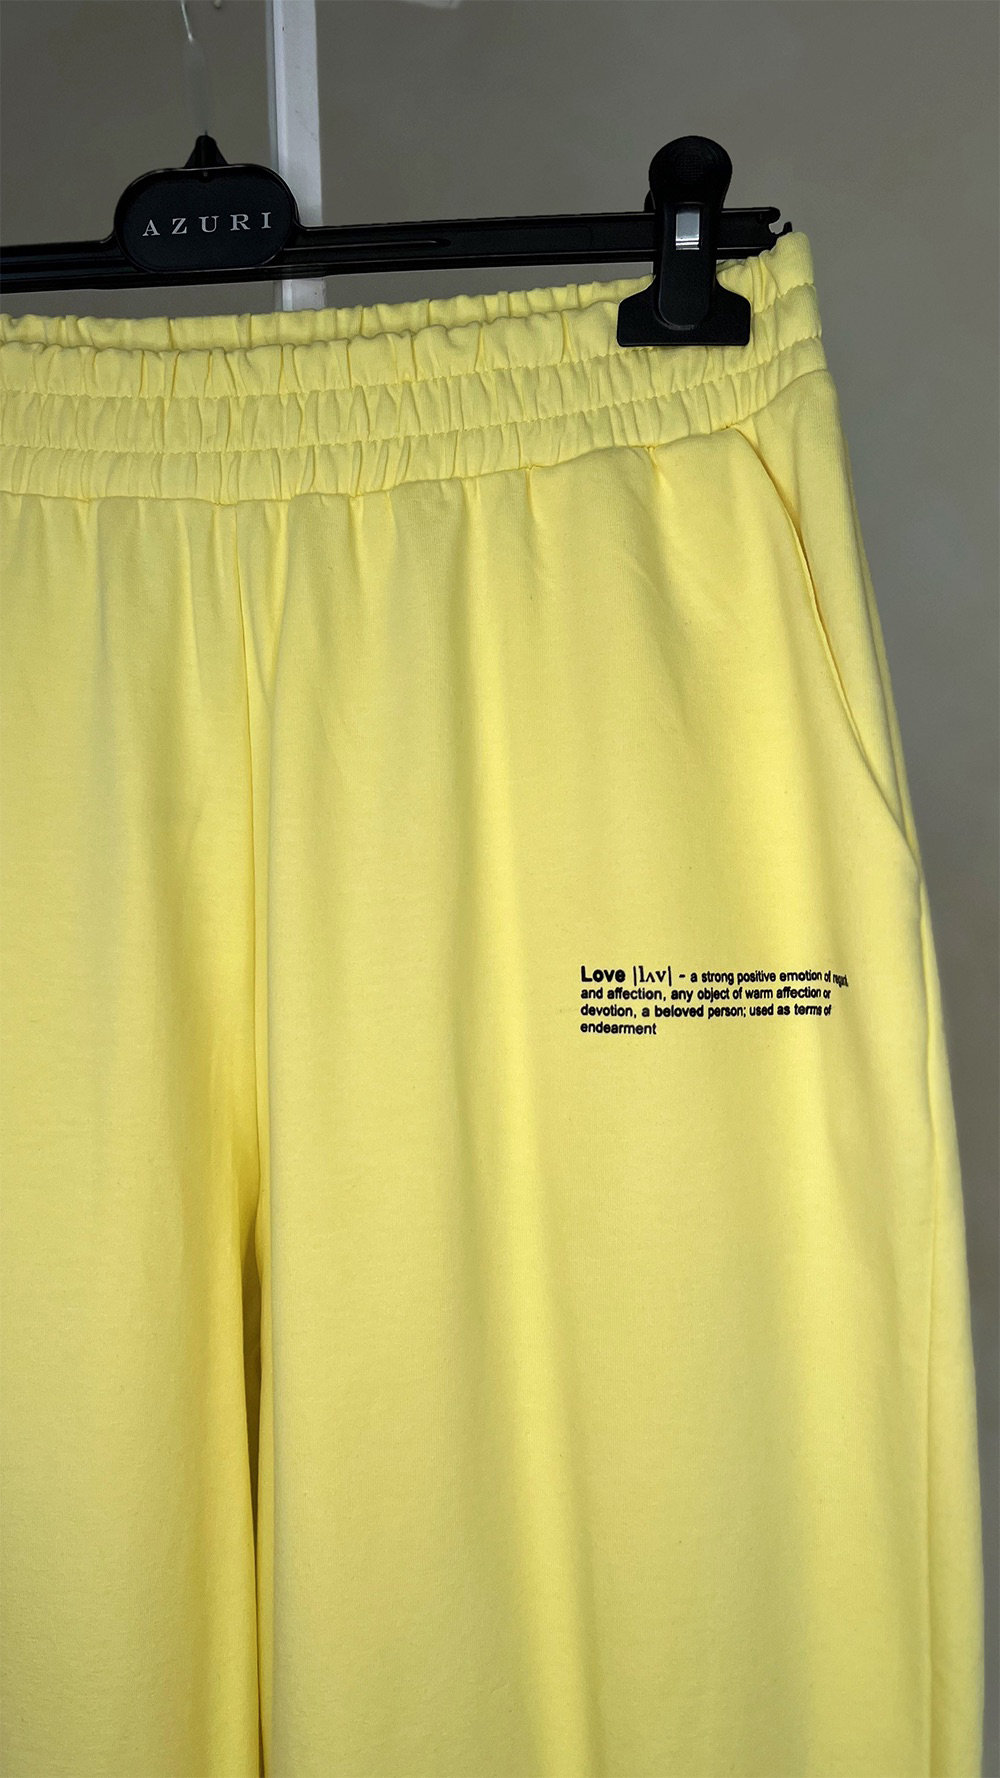 Желтые спортивные брюки